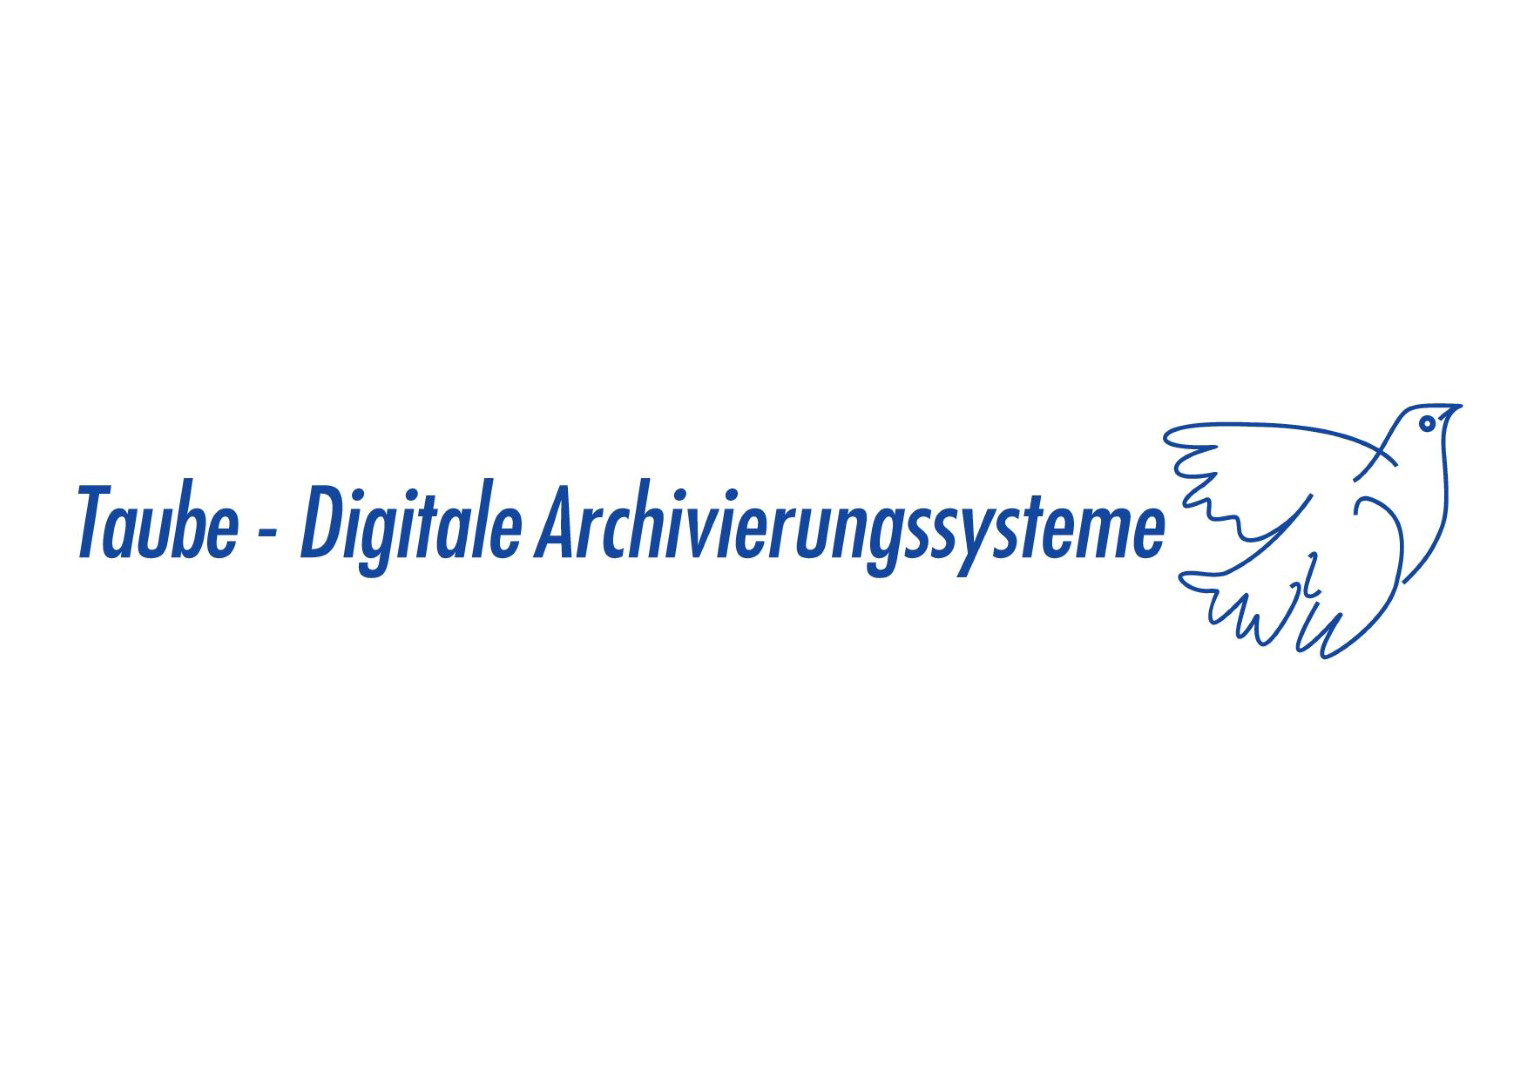 Das Bild zeigt das Logo der Taube Digitale Archivierungssysteme GmbH